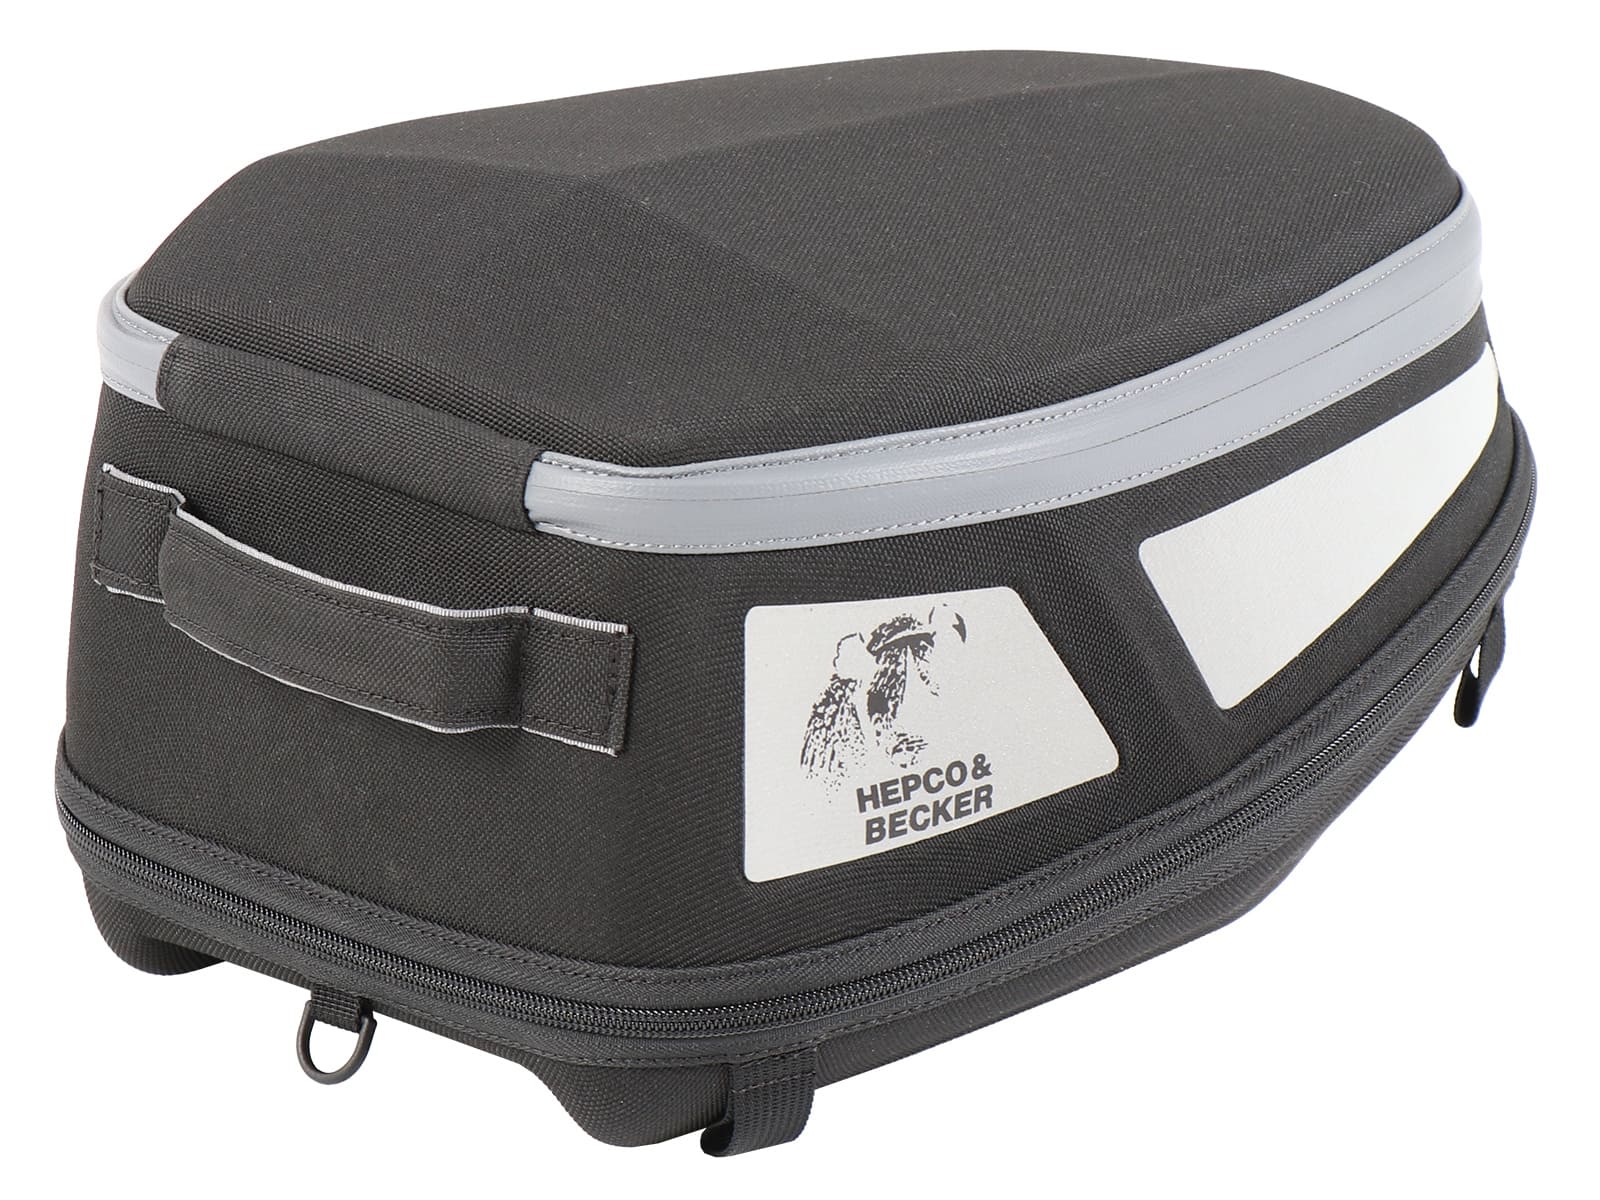 Royster rear bag Sport incl. Basic fastening adapter - black/grey